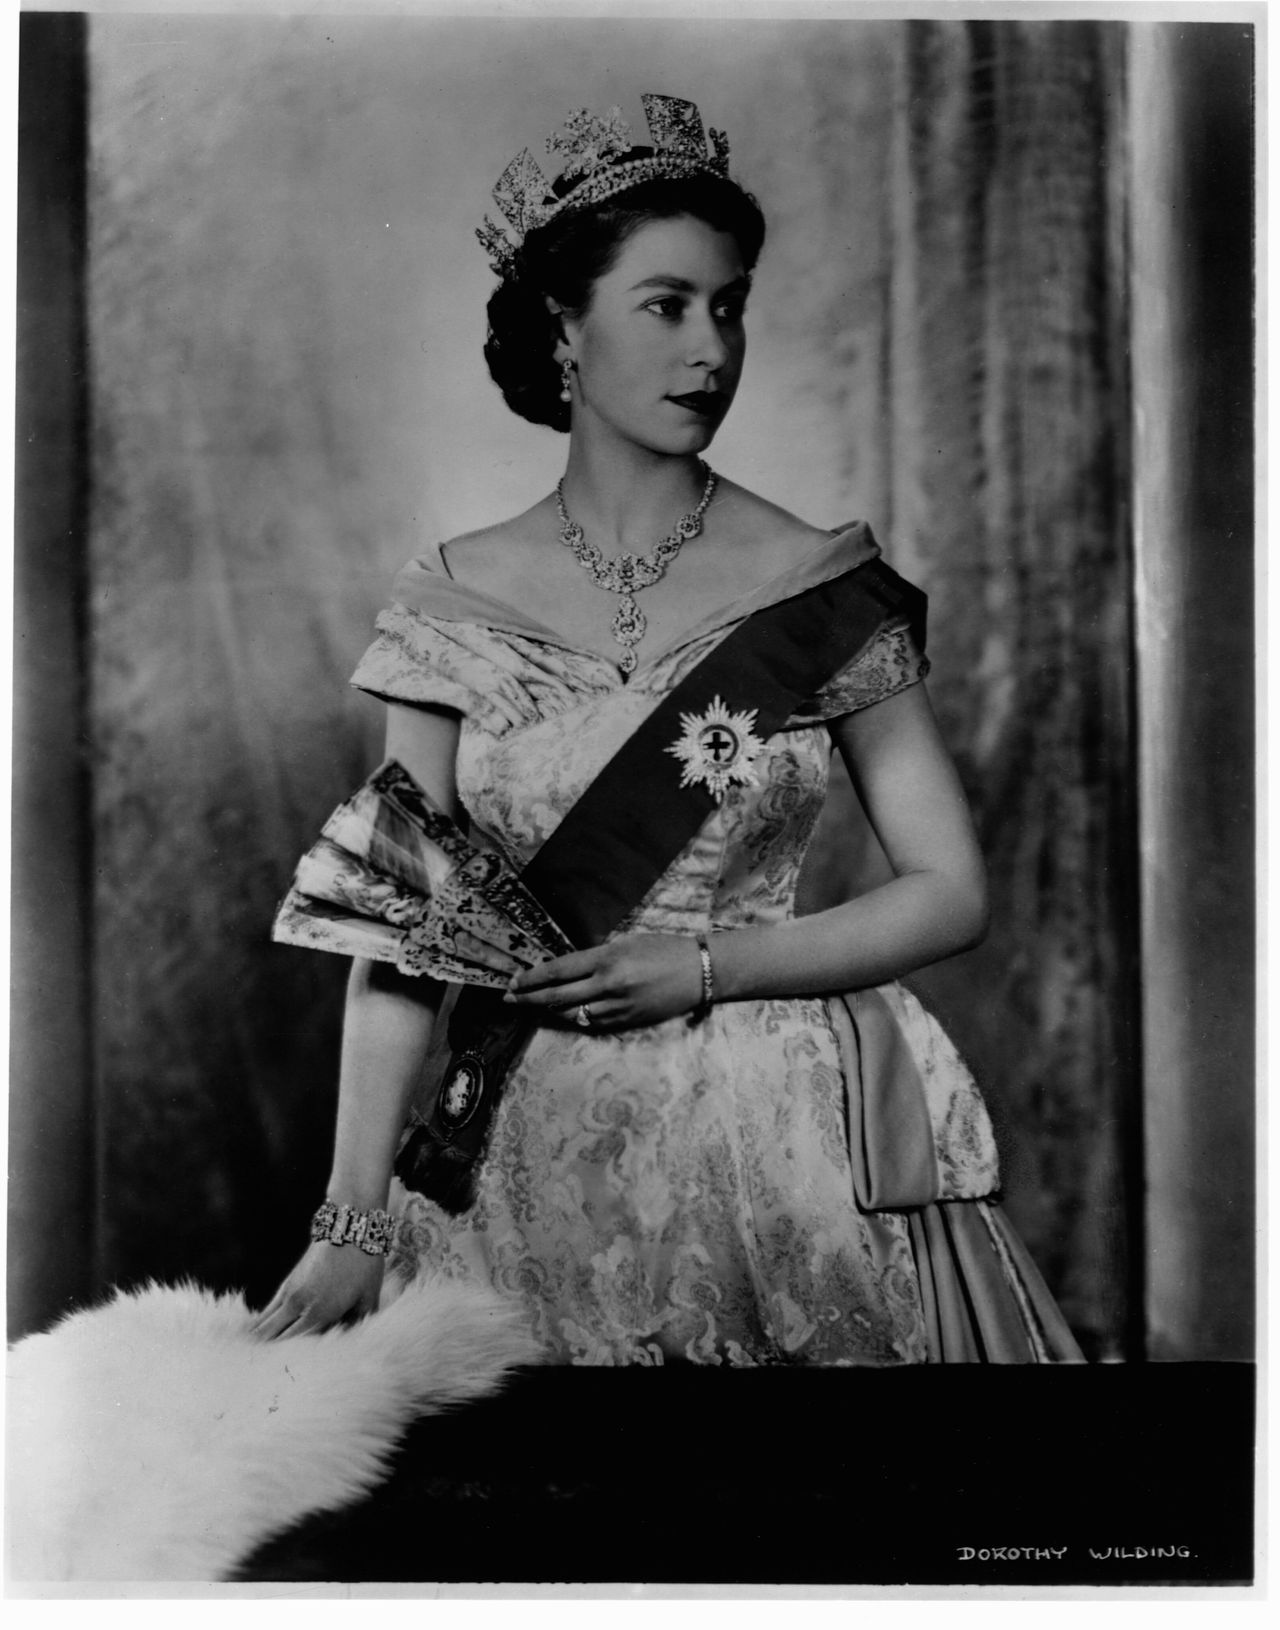 Queen Elizabeth II in an undated image.